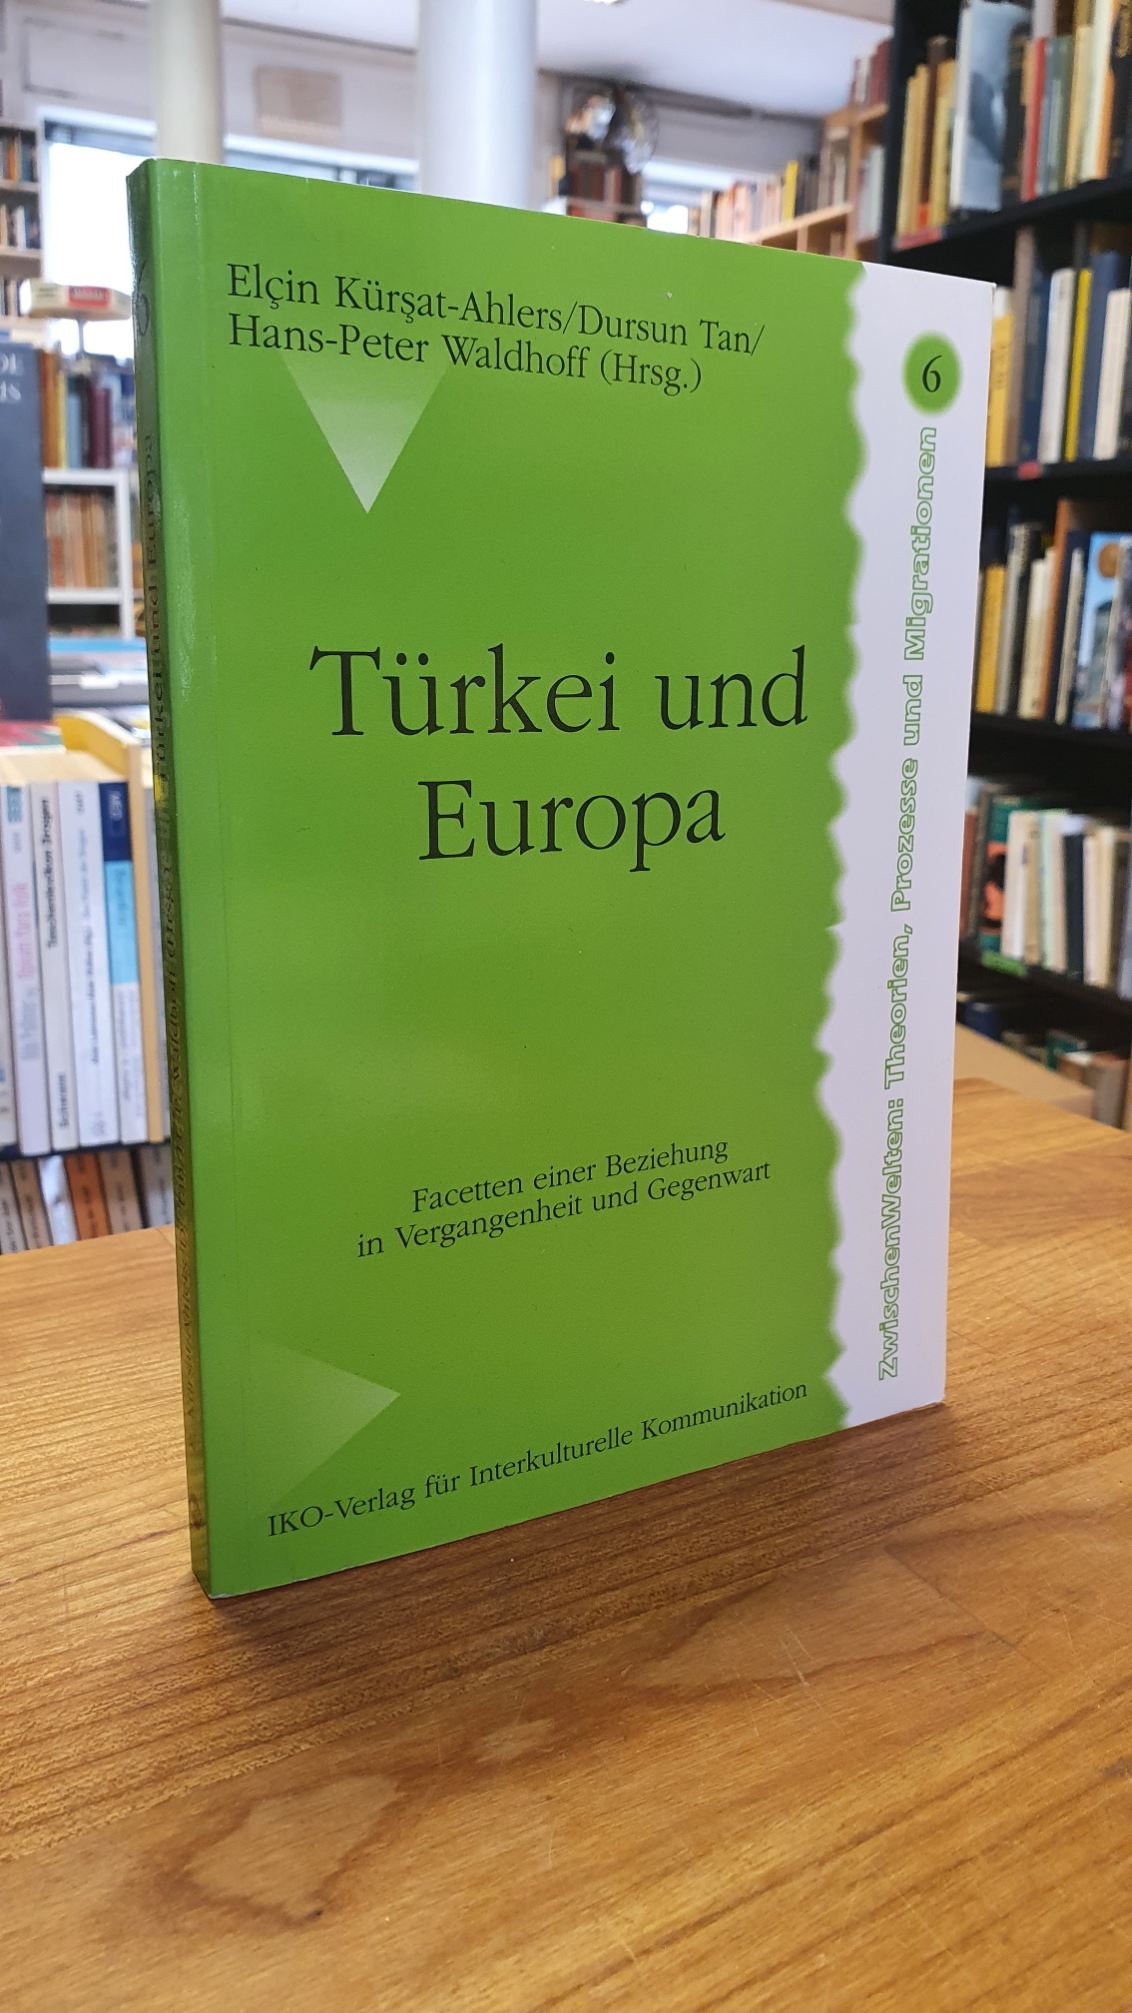 Türkei und Europa – Facetten einer Beziehung in Vergangenheit und Gegenwart,